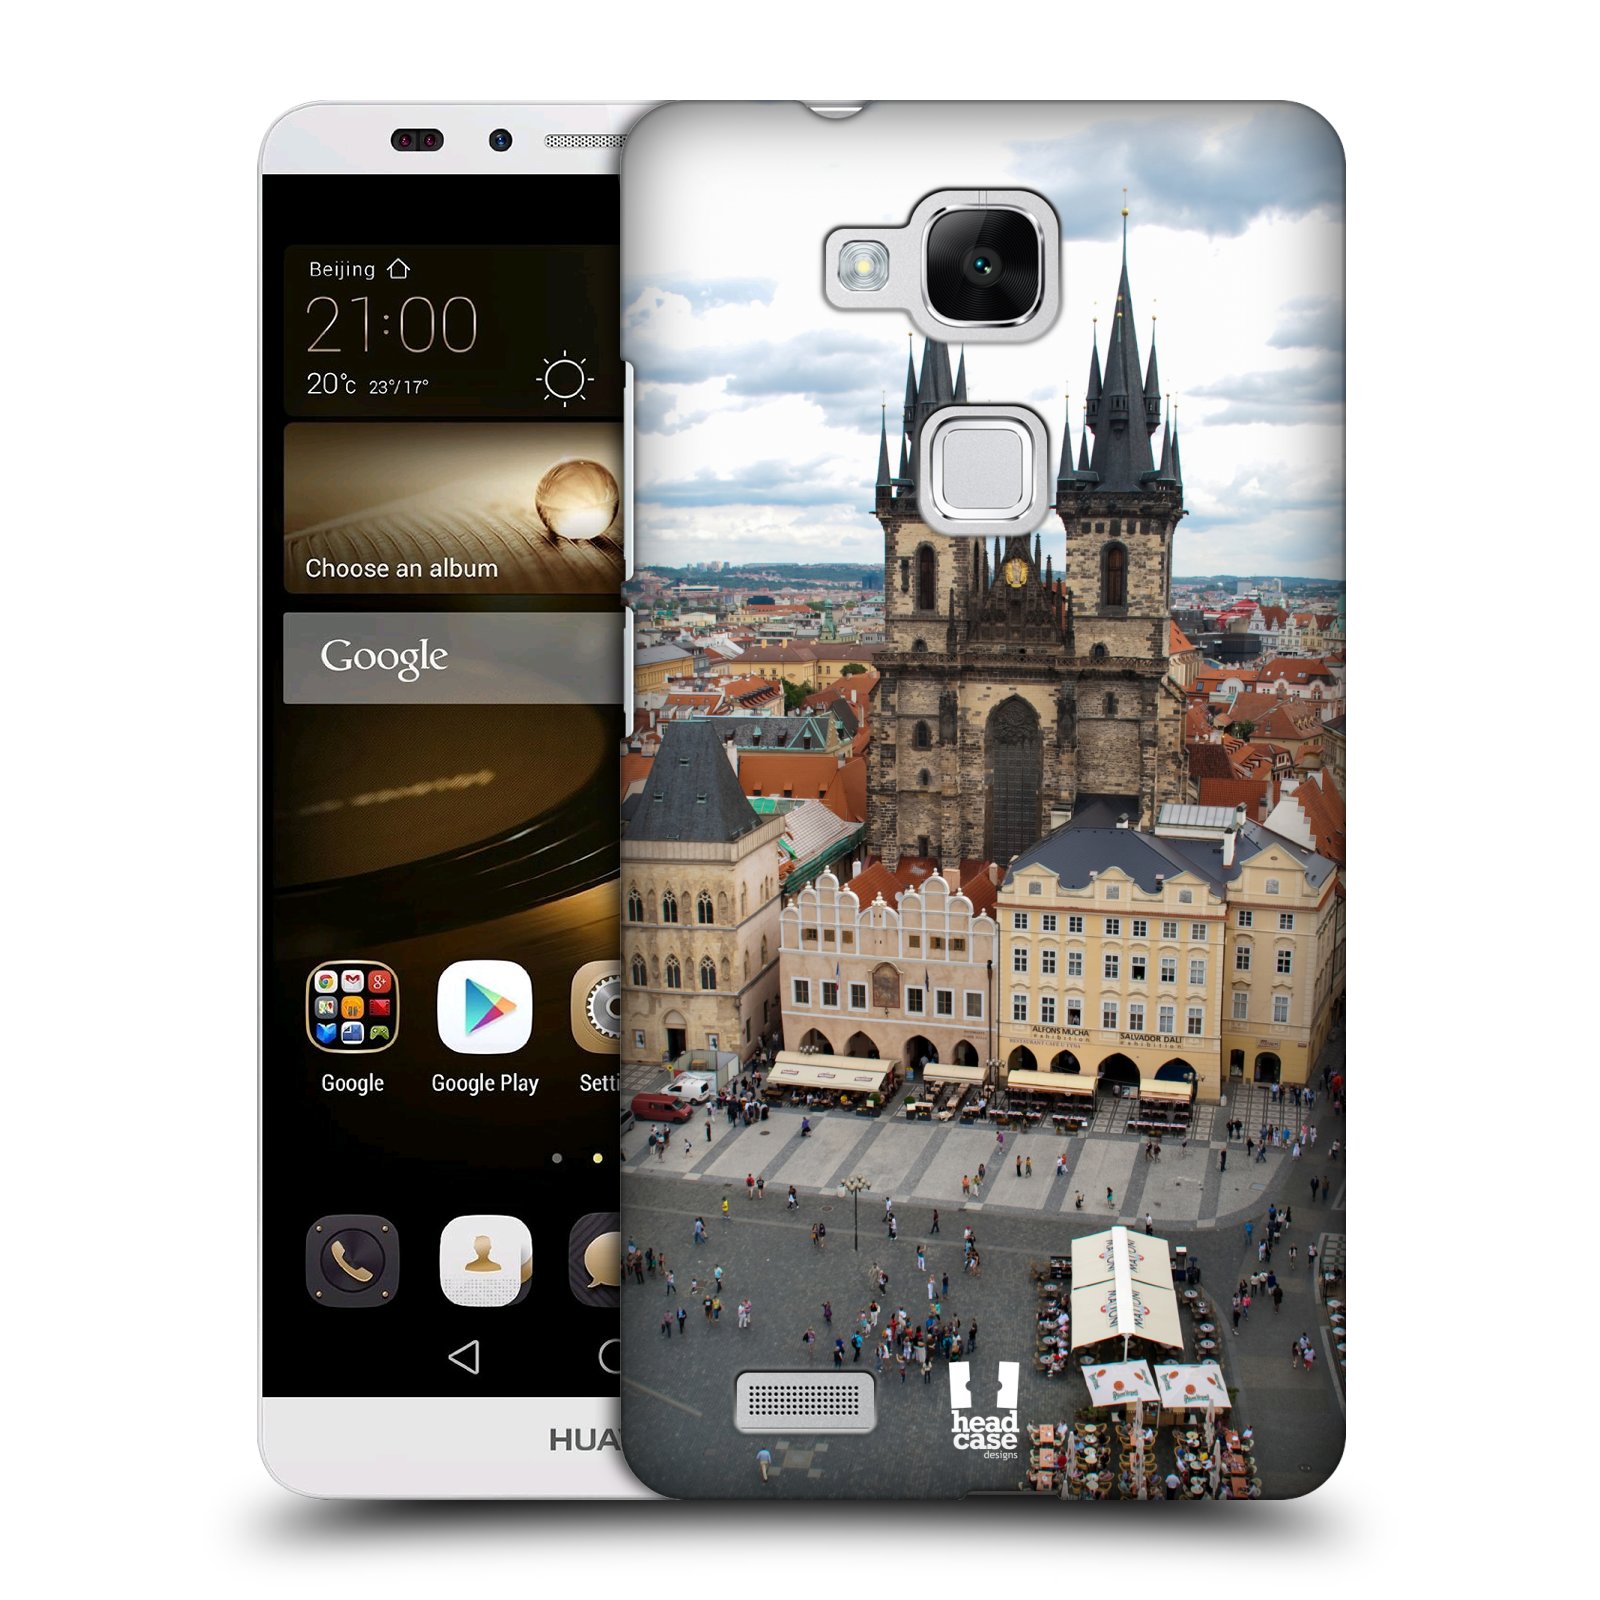 HEAD CASE plastový obal na mobil Huawei Mate 7 vzor Města foto náměstí ČESKÁ REPUBLIKA, PRAHA, STAROMĚSTSKÉ NÁMĚSTÍ